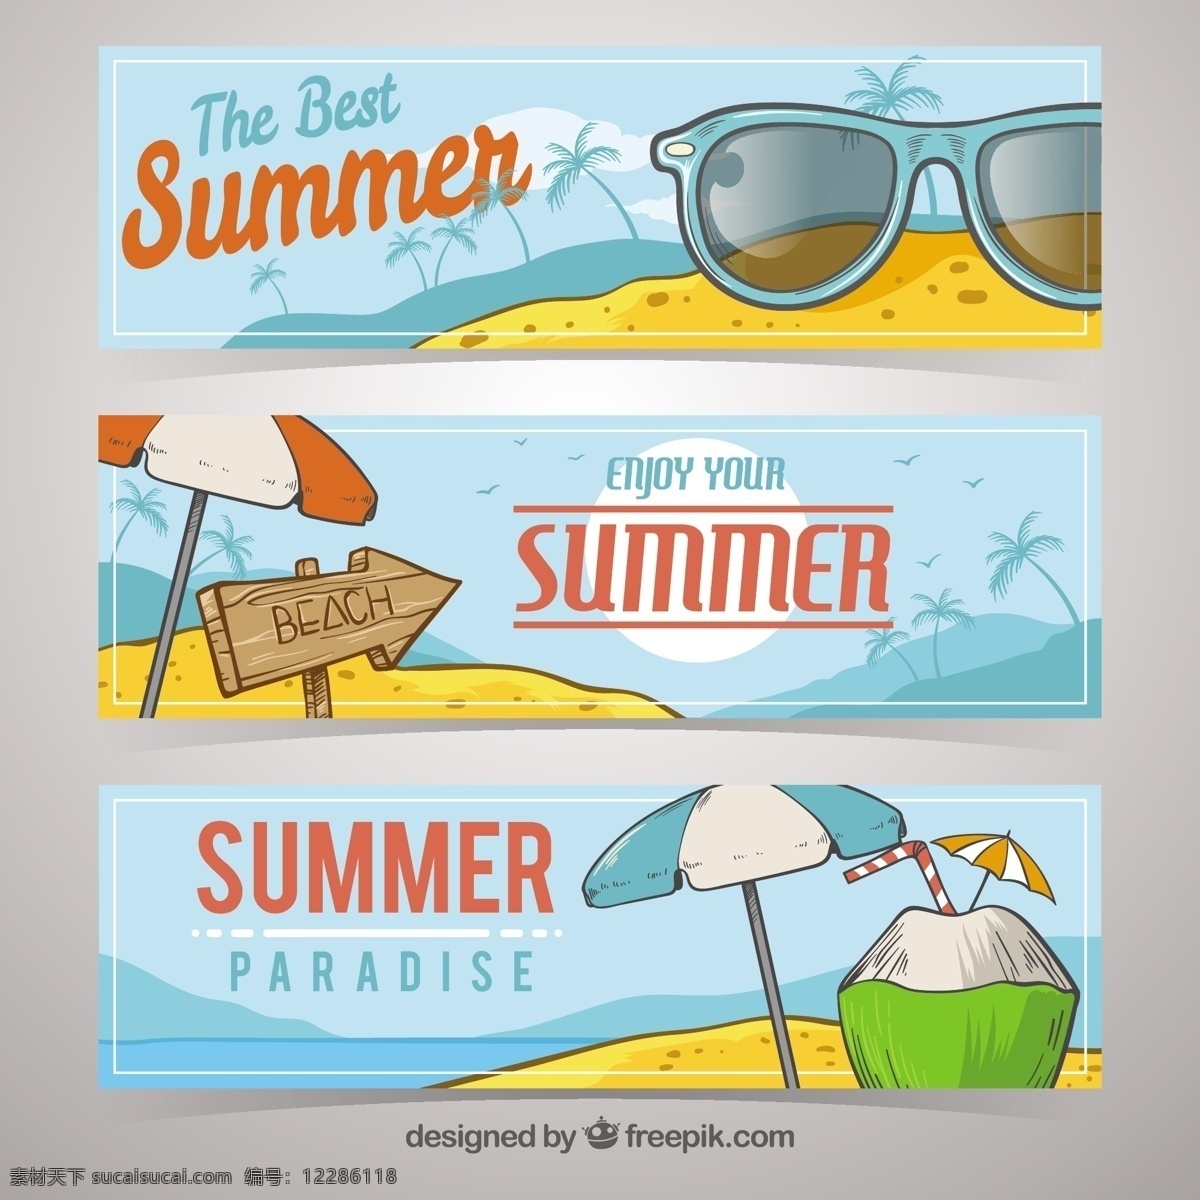 夏季 三 旗帜 选择 海洋 海滩 阳光 横幅 颜色 假日 公寓 饮料 平面设计 太阳镜 度假 沙滩 夏季海滩 季节